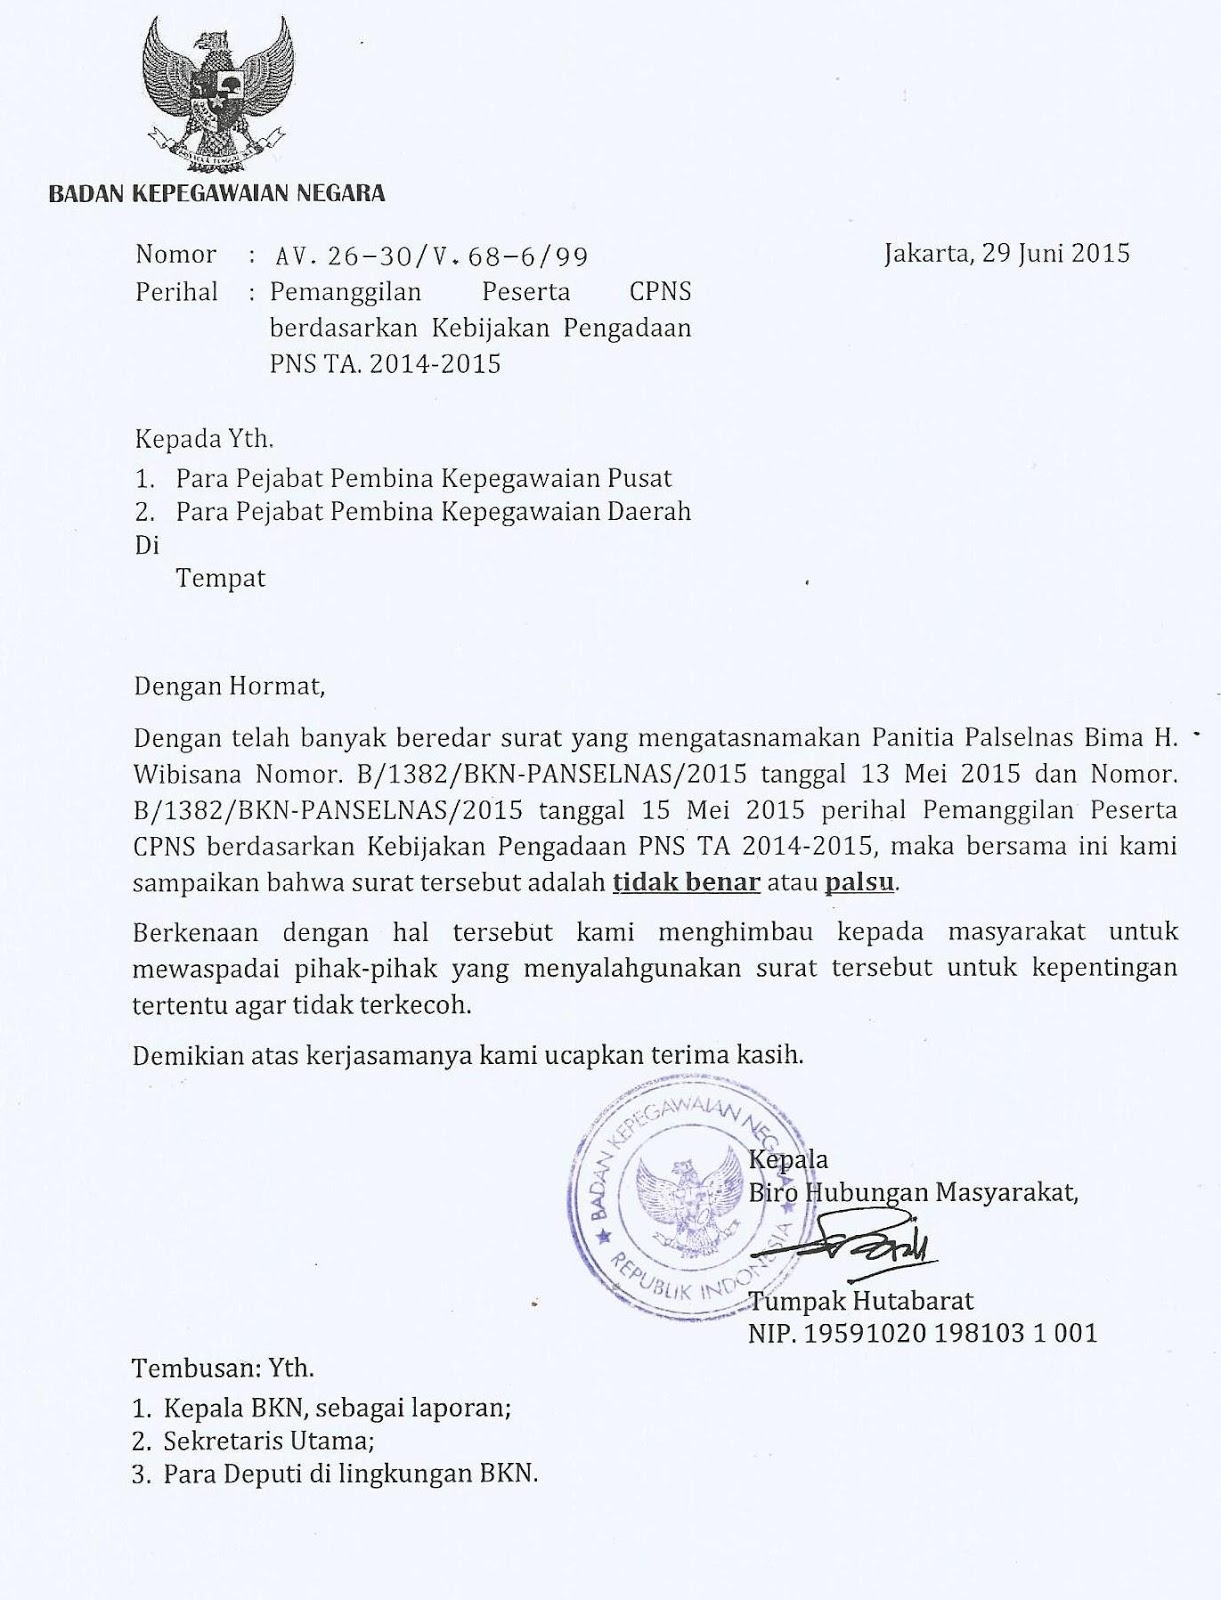 Berikut ini pengumuman BKN terkait telah banyak beredar surat yang mengatasnamakan Panita Palselnas Bima Hiwibisana Nomor B 1382 BKN PANSELNAS 2015 tanggal